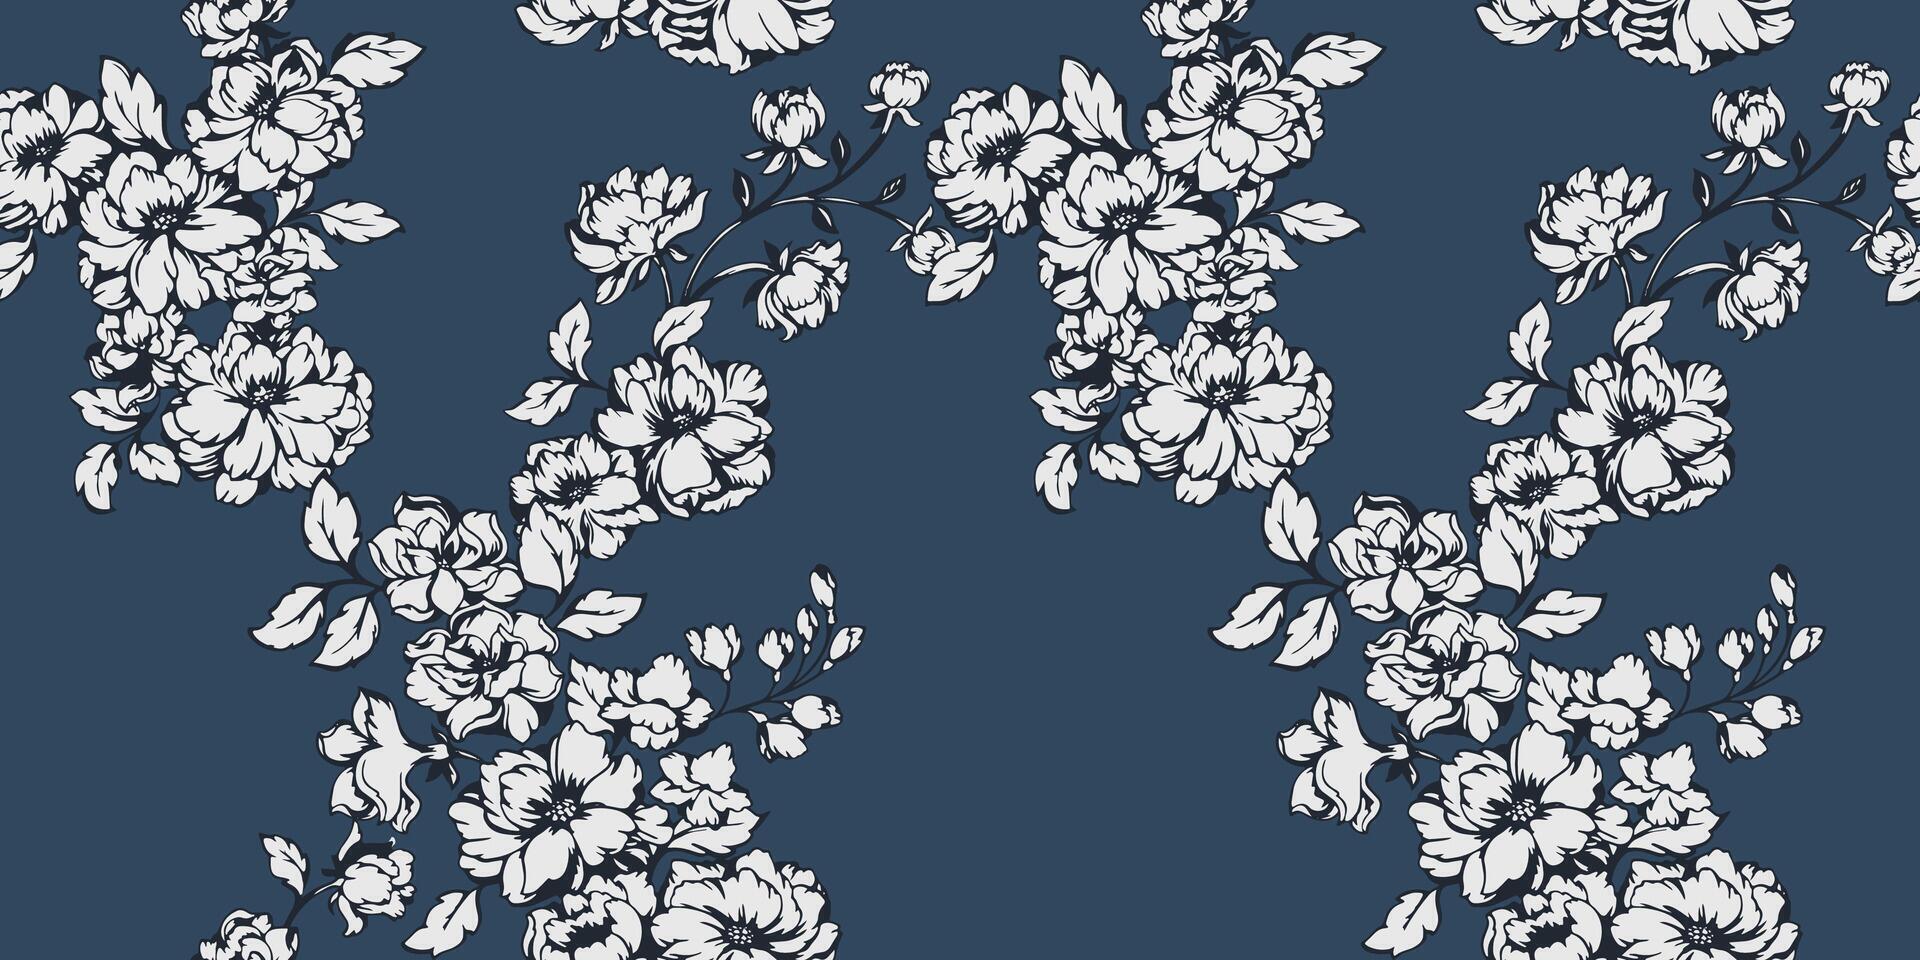 dunkel monoton stilisiert Blumen- nahtlos Muster. abstrakt künstlerisch Geäst Blumen mit Knospen Blätter Hintergrund. Vektor gezeichnet stilisiert Illustration. Vorlage zum Design, Mode, Drucken, Stoff